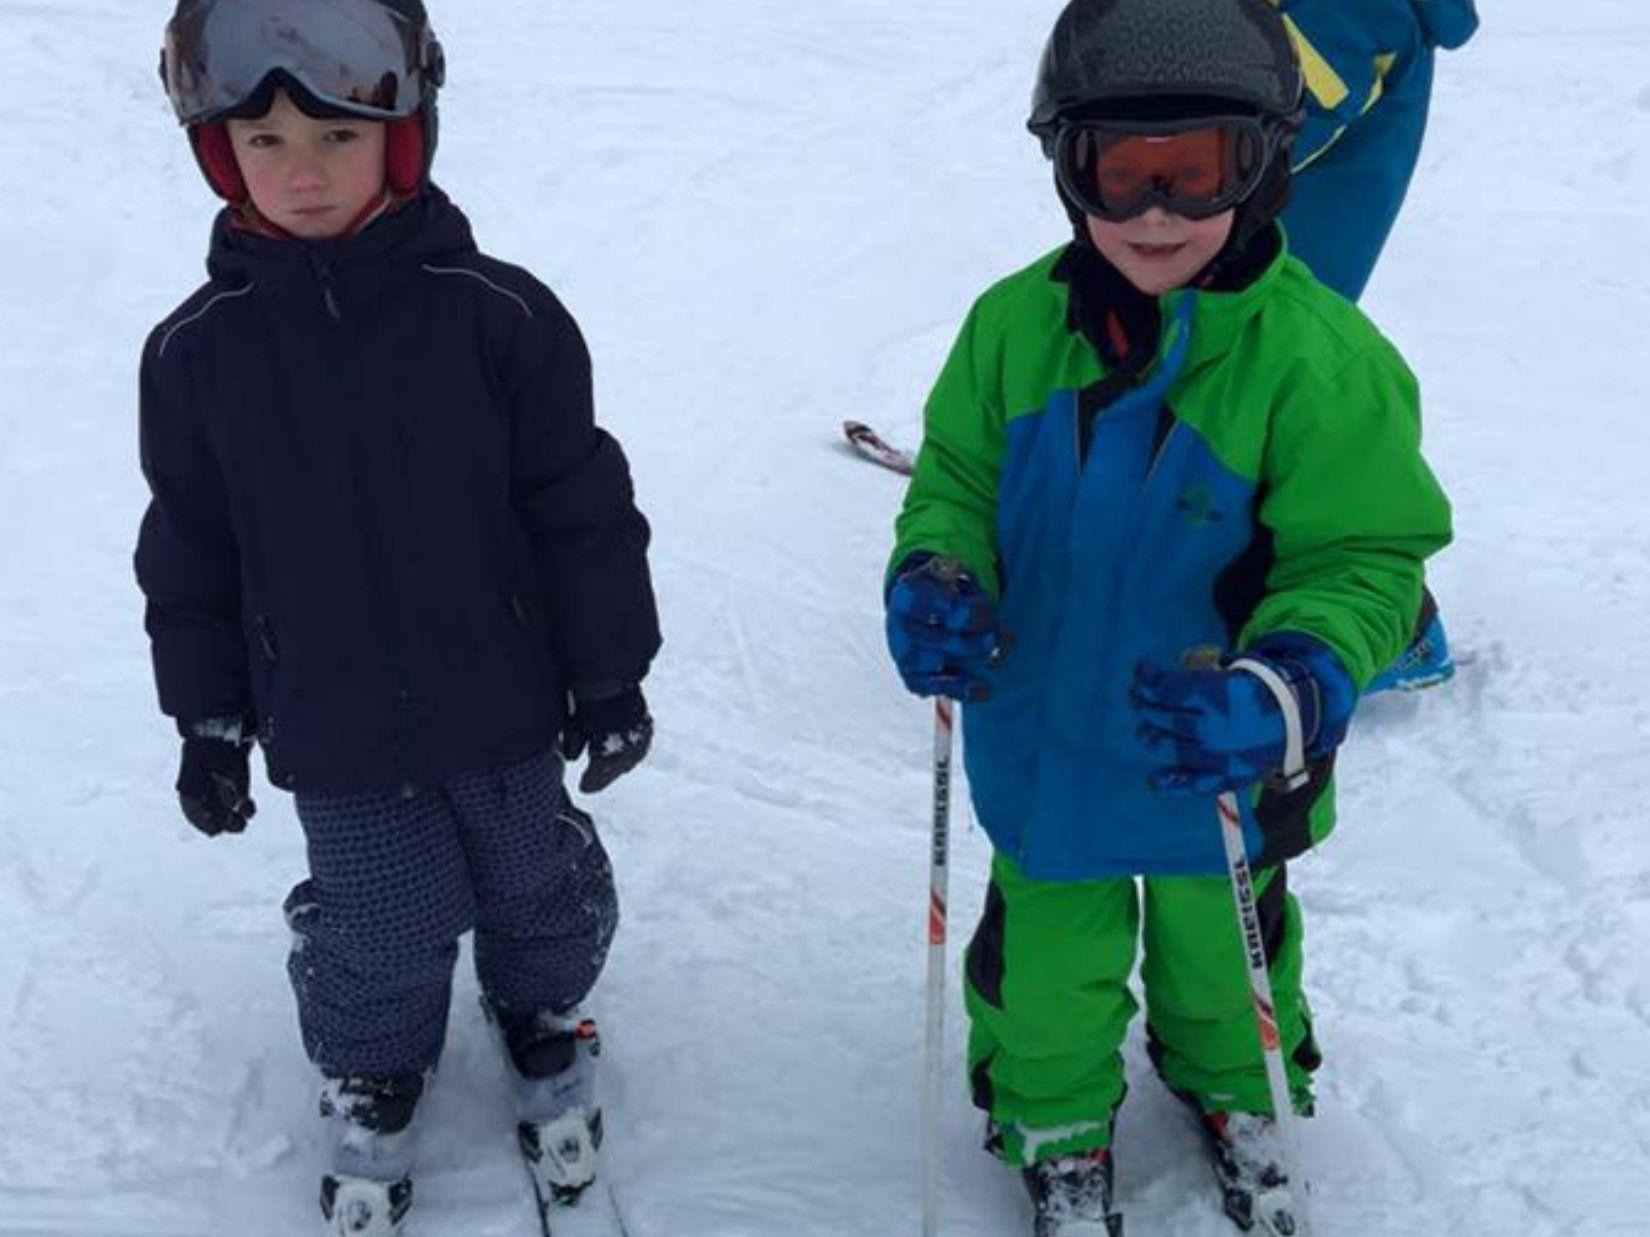 Die jungen Skifans freuen sich auf die Skitage am Bödele